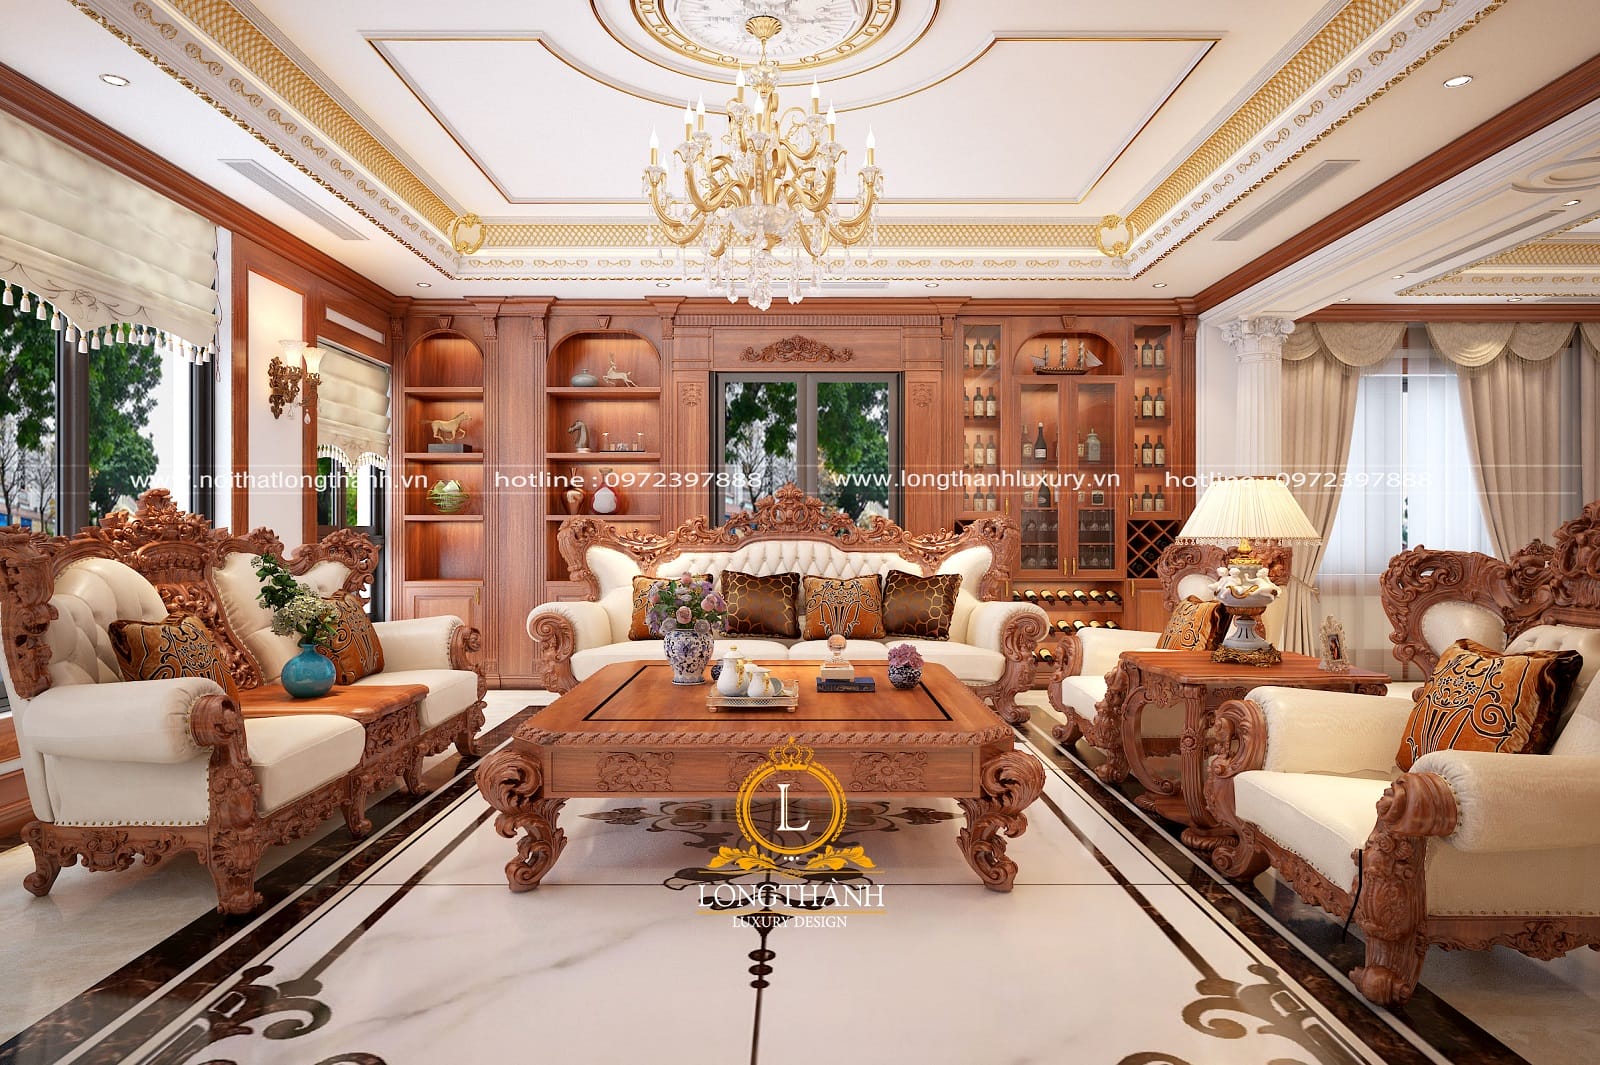 Sofa tân cổ điển đẹp, giá rẻ nội thất Long Thành đã lắp đặt tại Hải Phòng